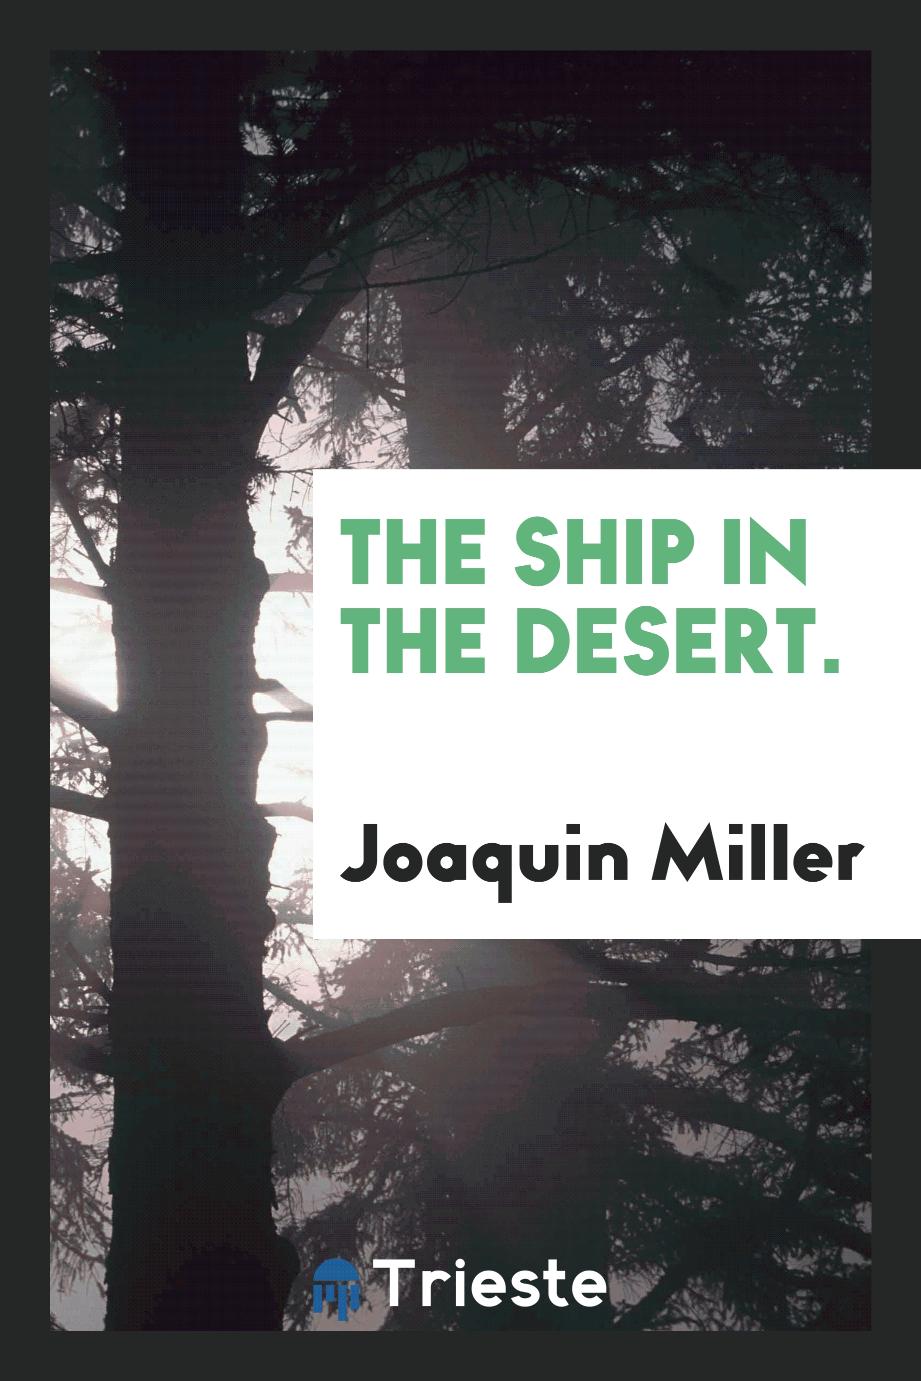 The ship in the desert.